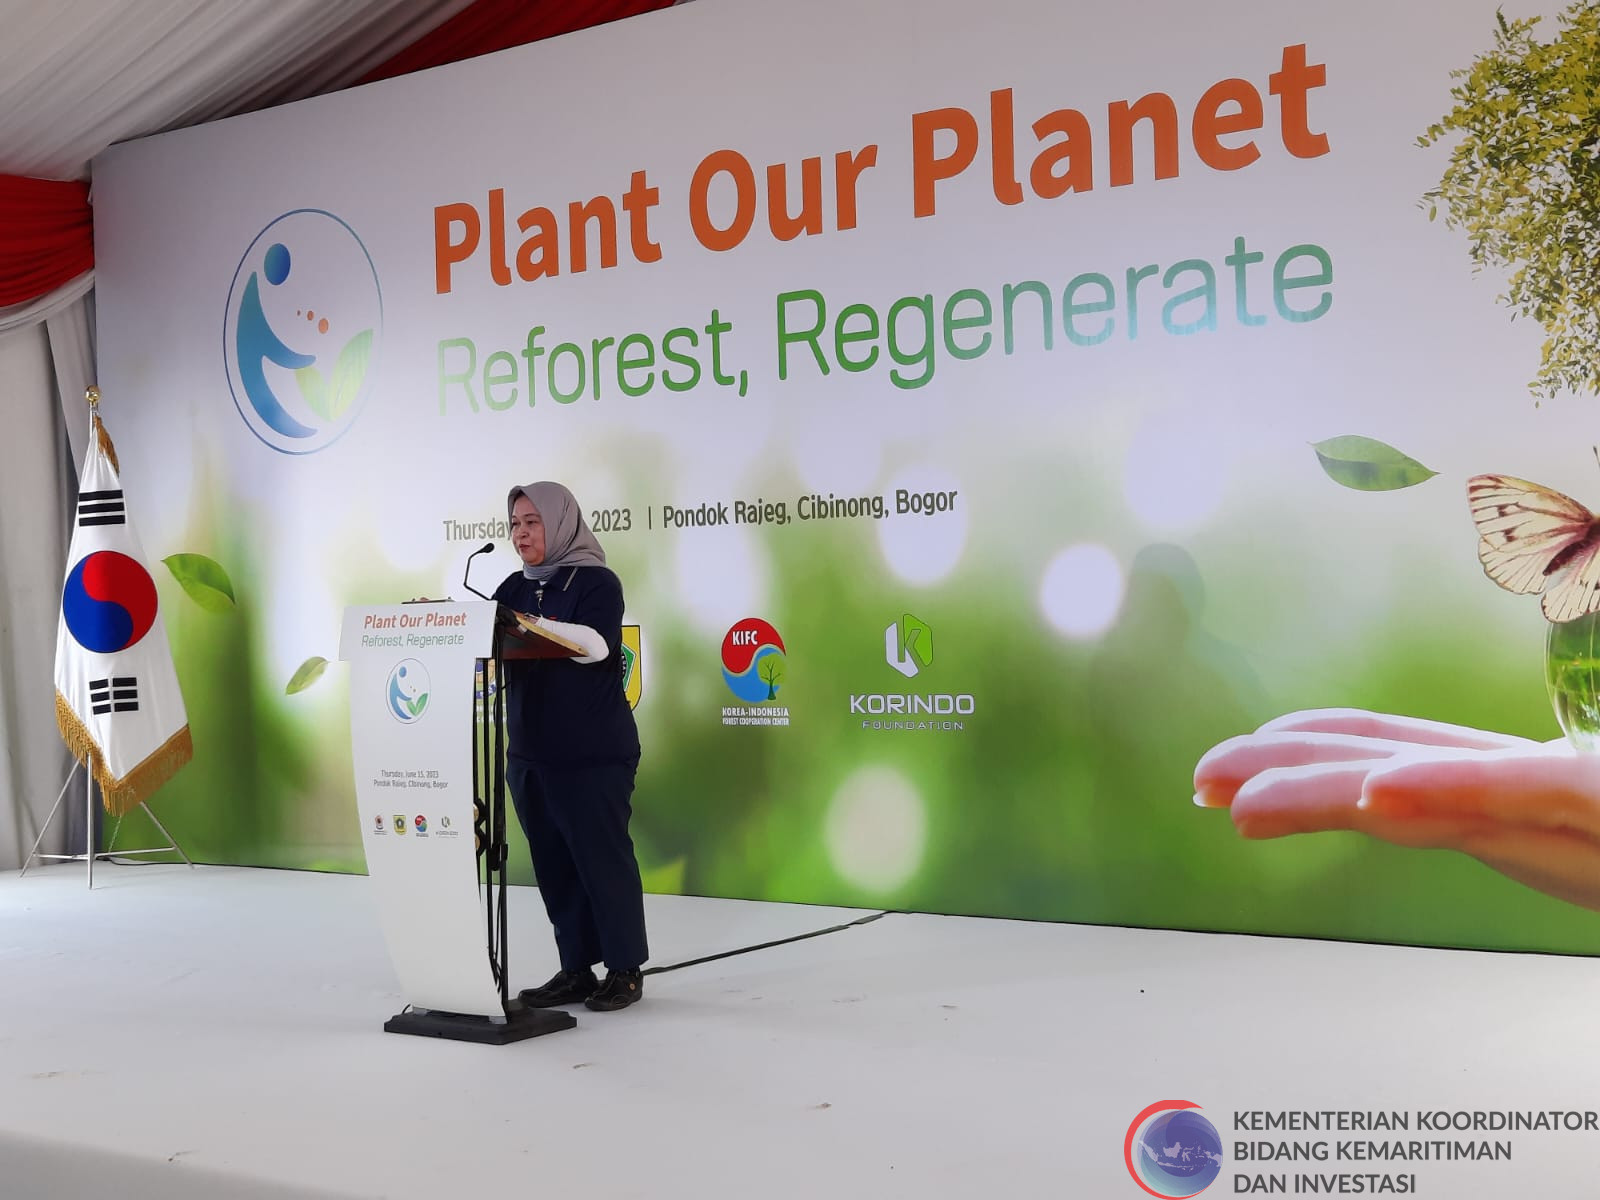 Hadiri Kick-off Event under the Global Project “Plant Our Planet”, Pemerintah Indonesia Tegaskan Komitmennya dalam FOLU Net Sink 2023